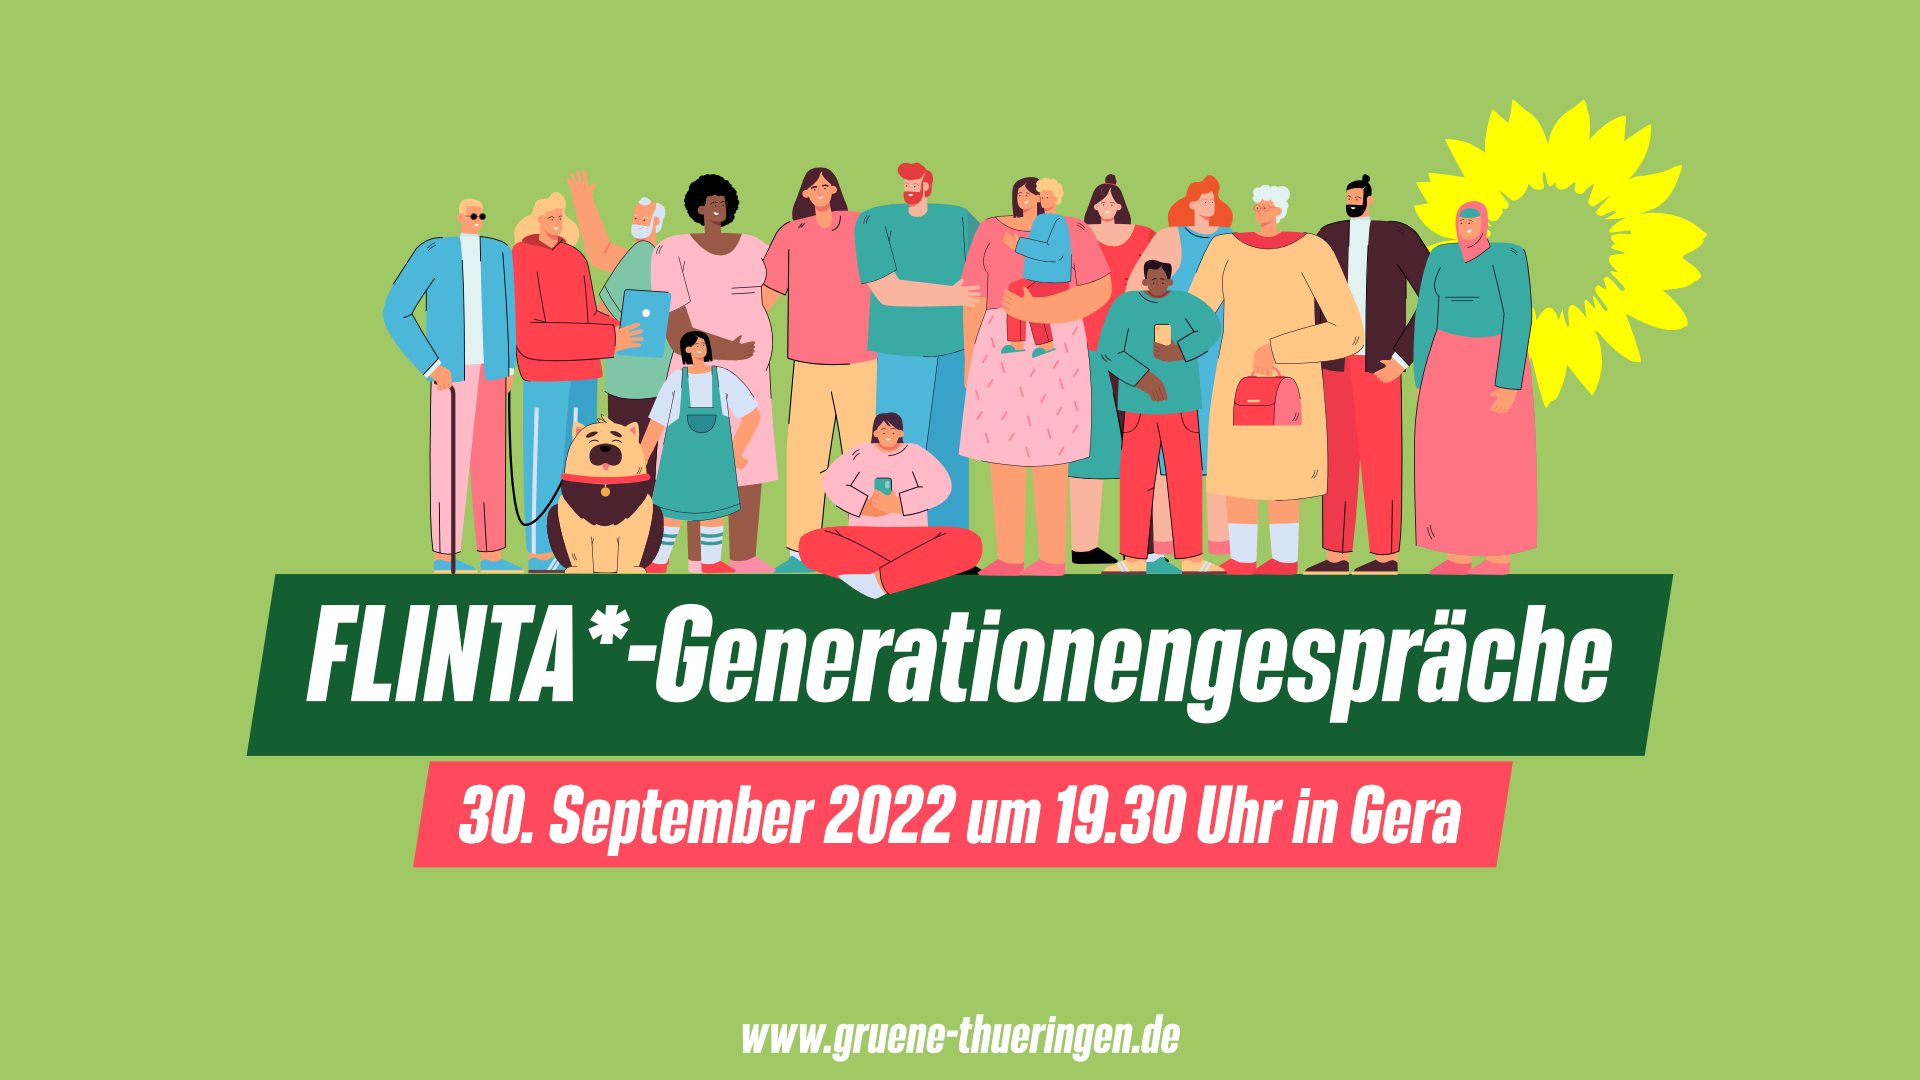 Sharepic mit den Daten des Treffs: 30. September 2022 um 19.30 Uhr in Gera